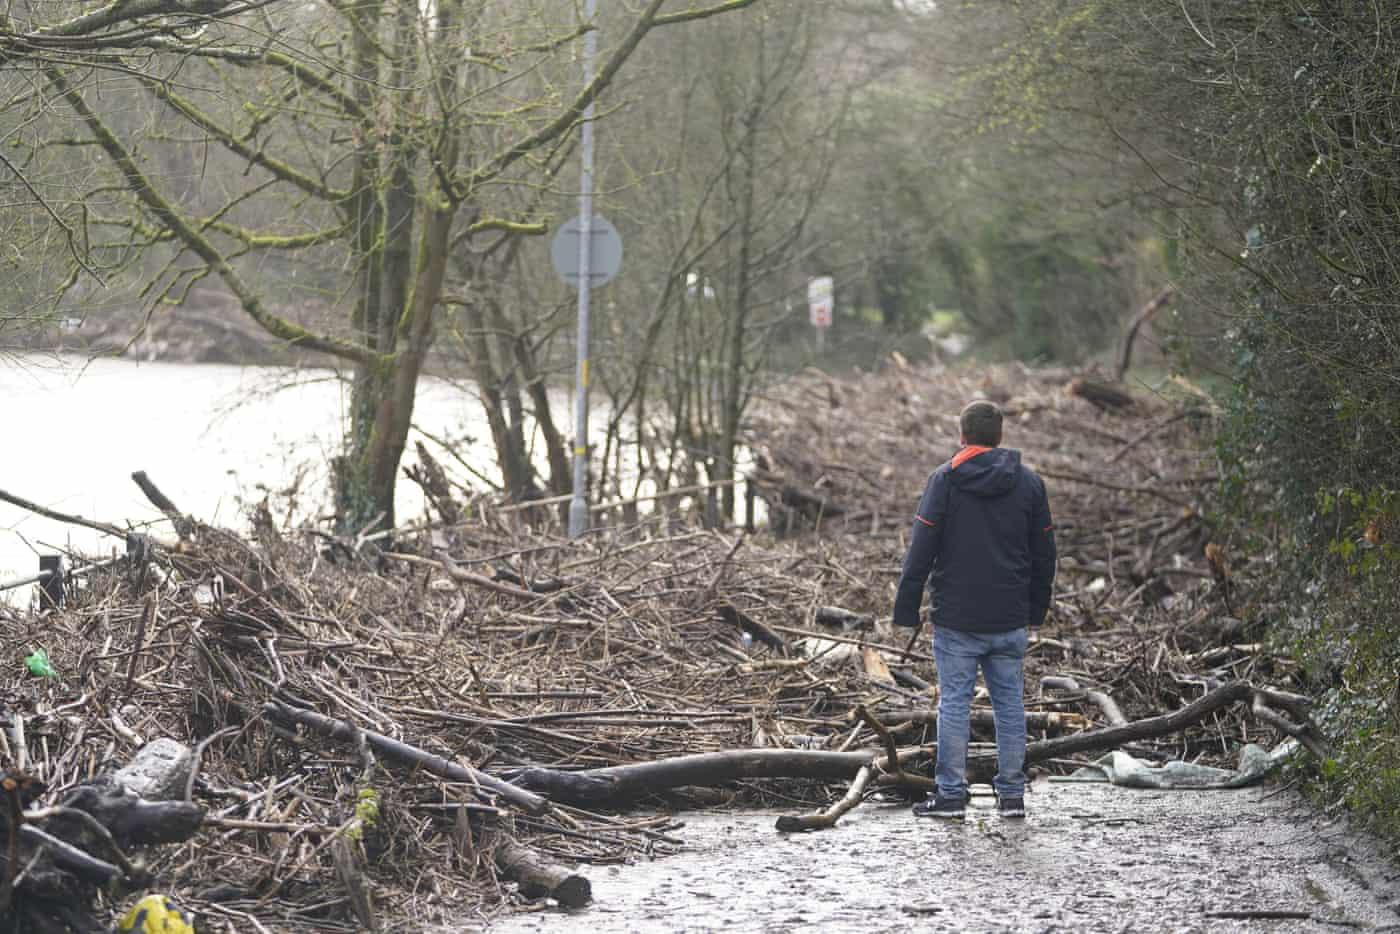 Tàn dư còn sót lại khi nước lũ rút khỏi sông Mersey gần khu vực Didsbury, Manchester sau khi cơn bão Franklin quét qua trong đêm. Ảnh: The Guardian.